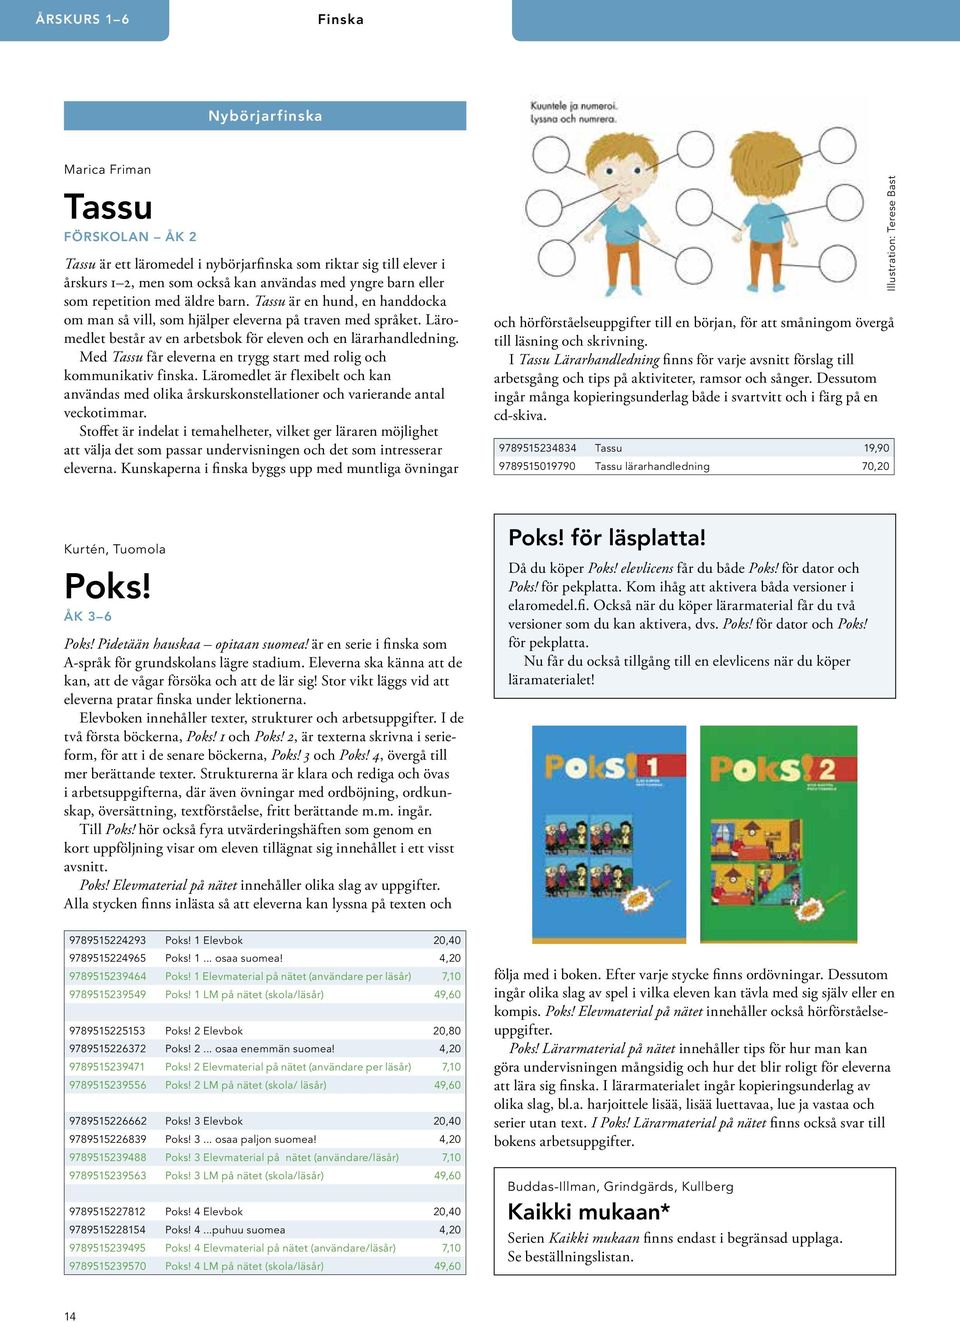 Med Tassu får eleverna en trygg start med rolig och kommunikativ finska. Läromedlet är flexibelt och kan användas med olika årskurskonstellationer och varierande antal veckotimmar.